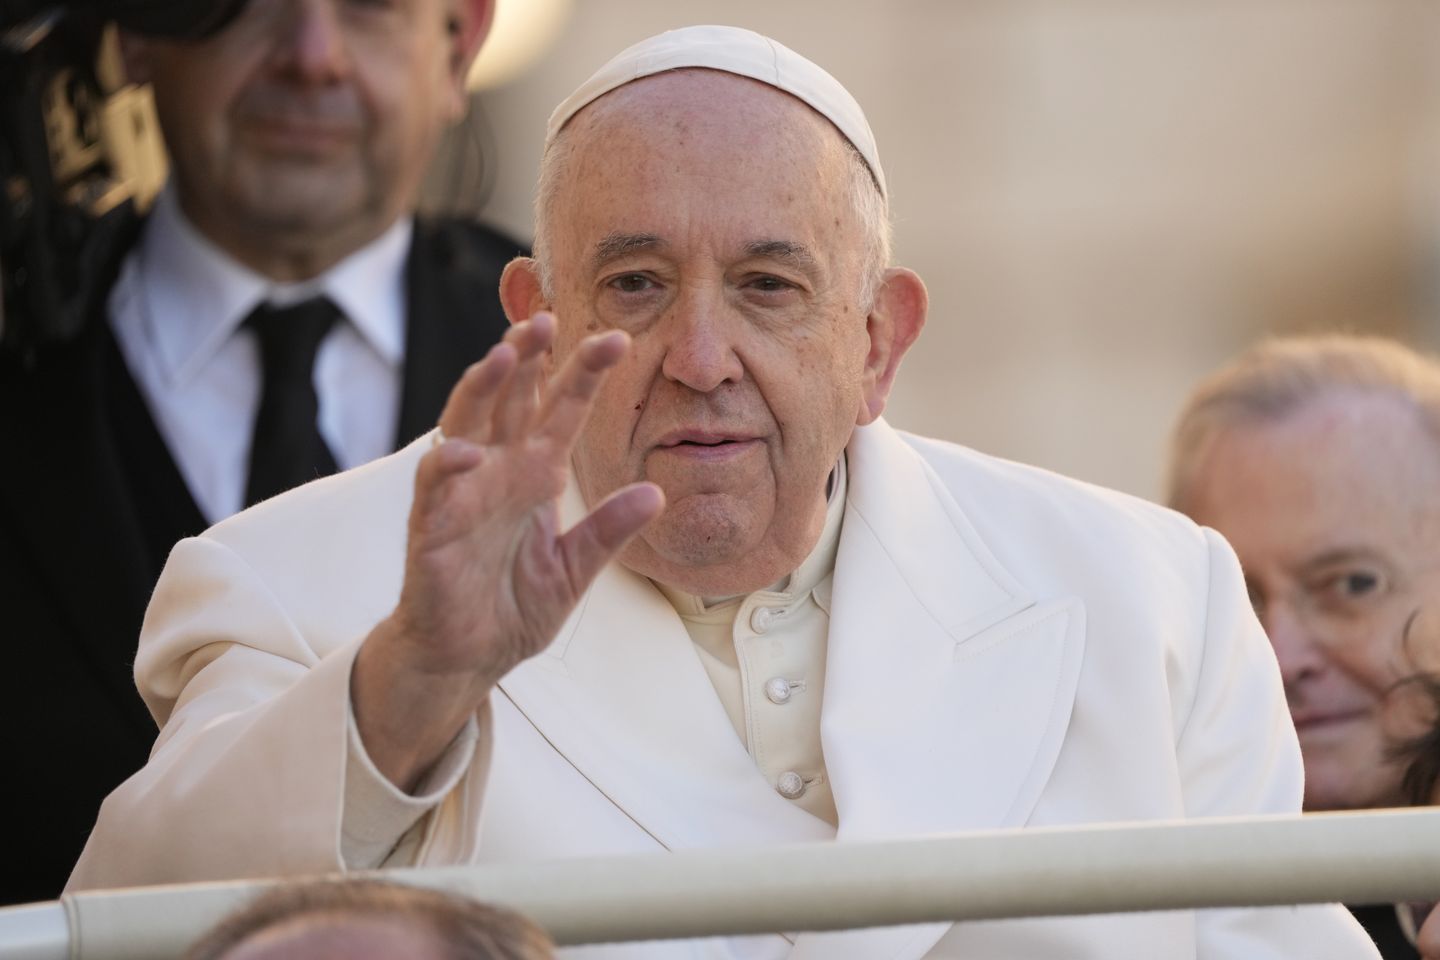 Katolik Roma, Gereja Ortodoks Timur harus menyelaraskan tanggal Paskah, kata Paus Fransiskus